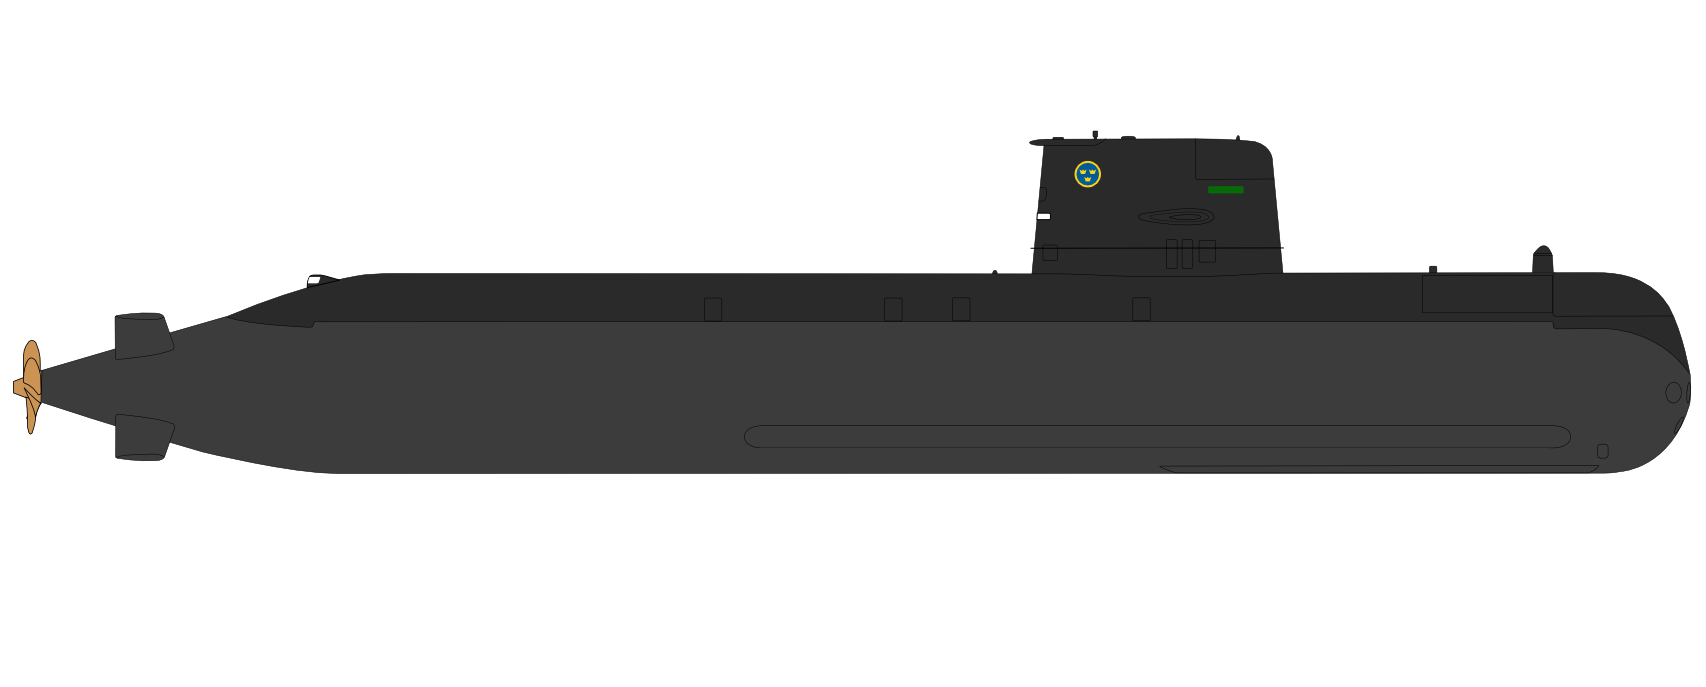 哥特蘭級潛艇側視圖